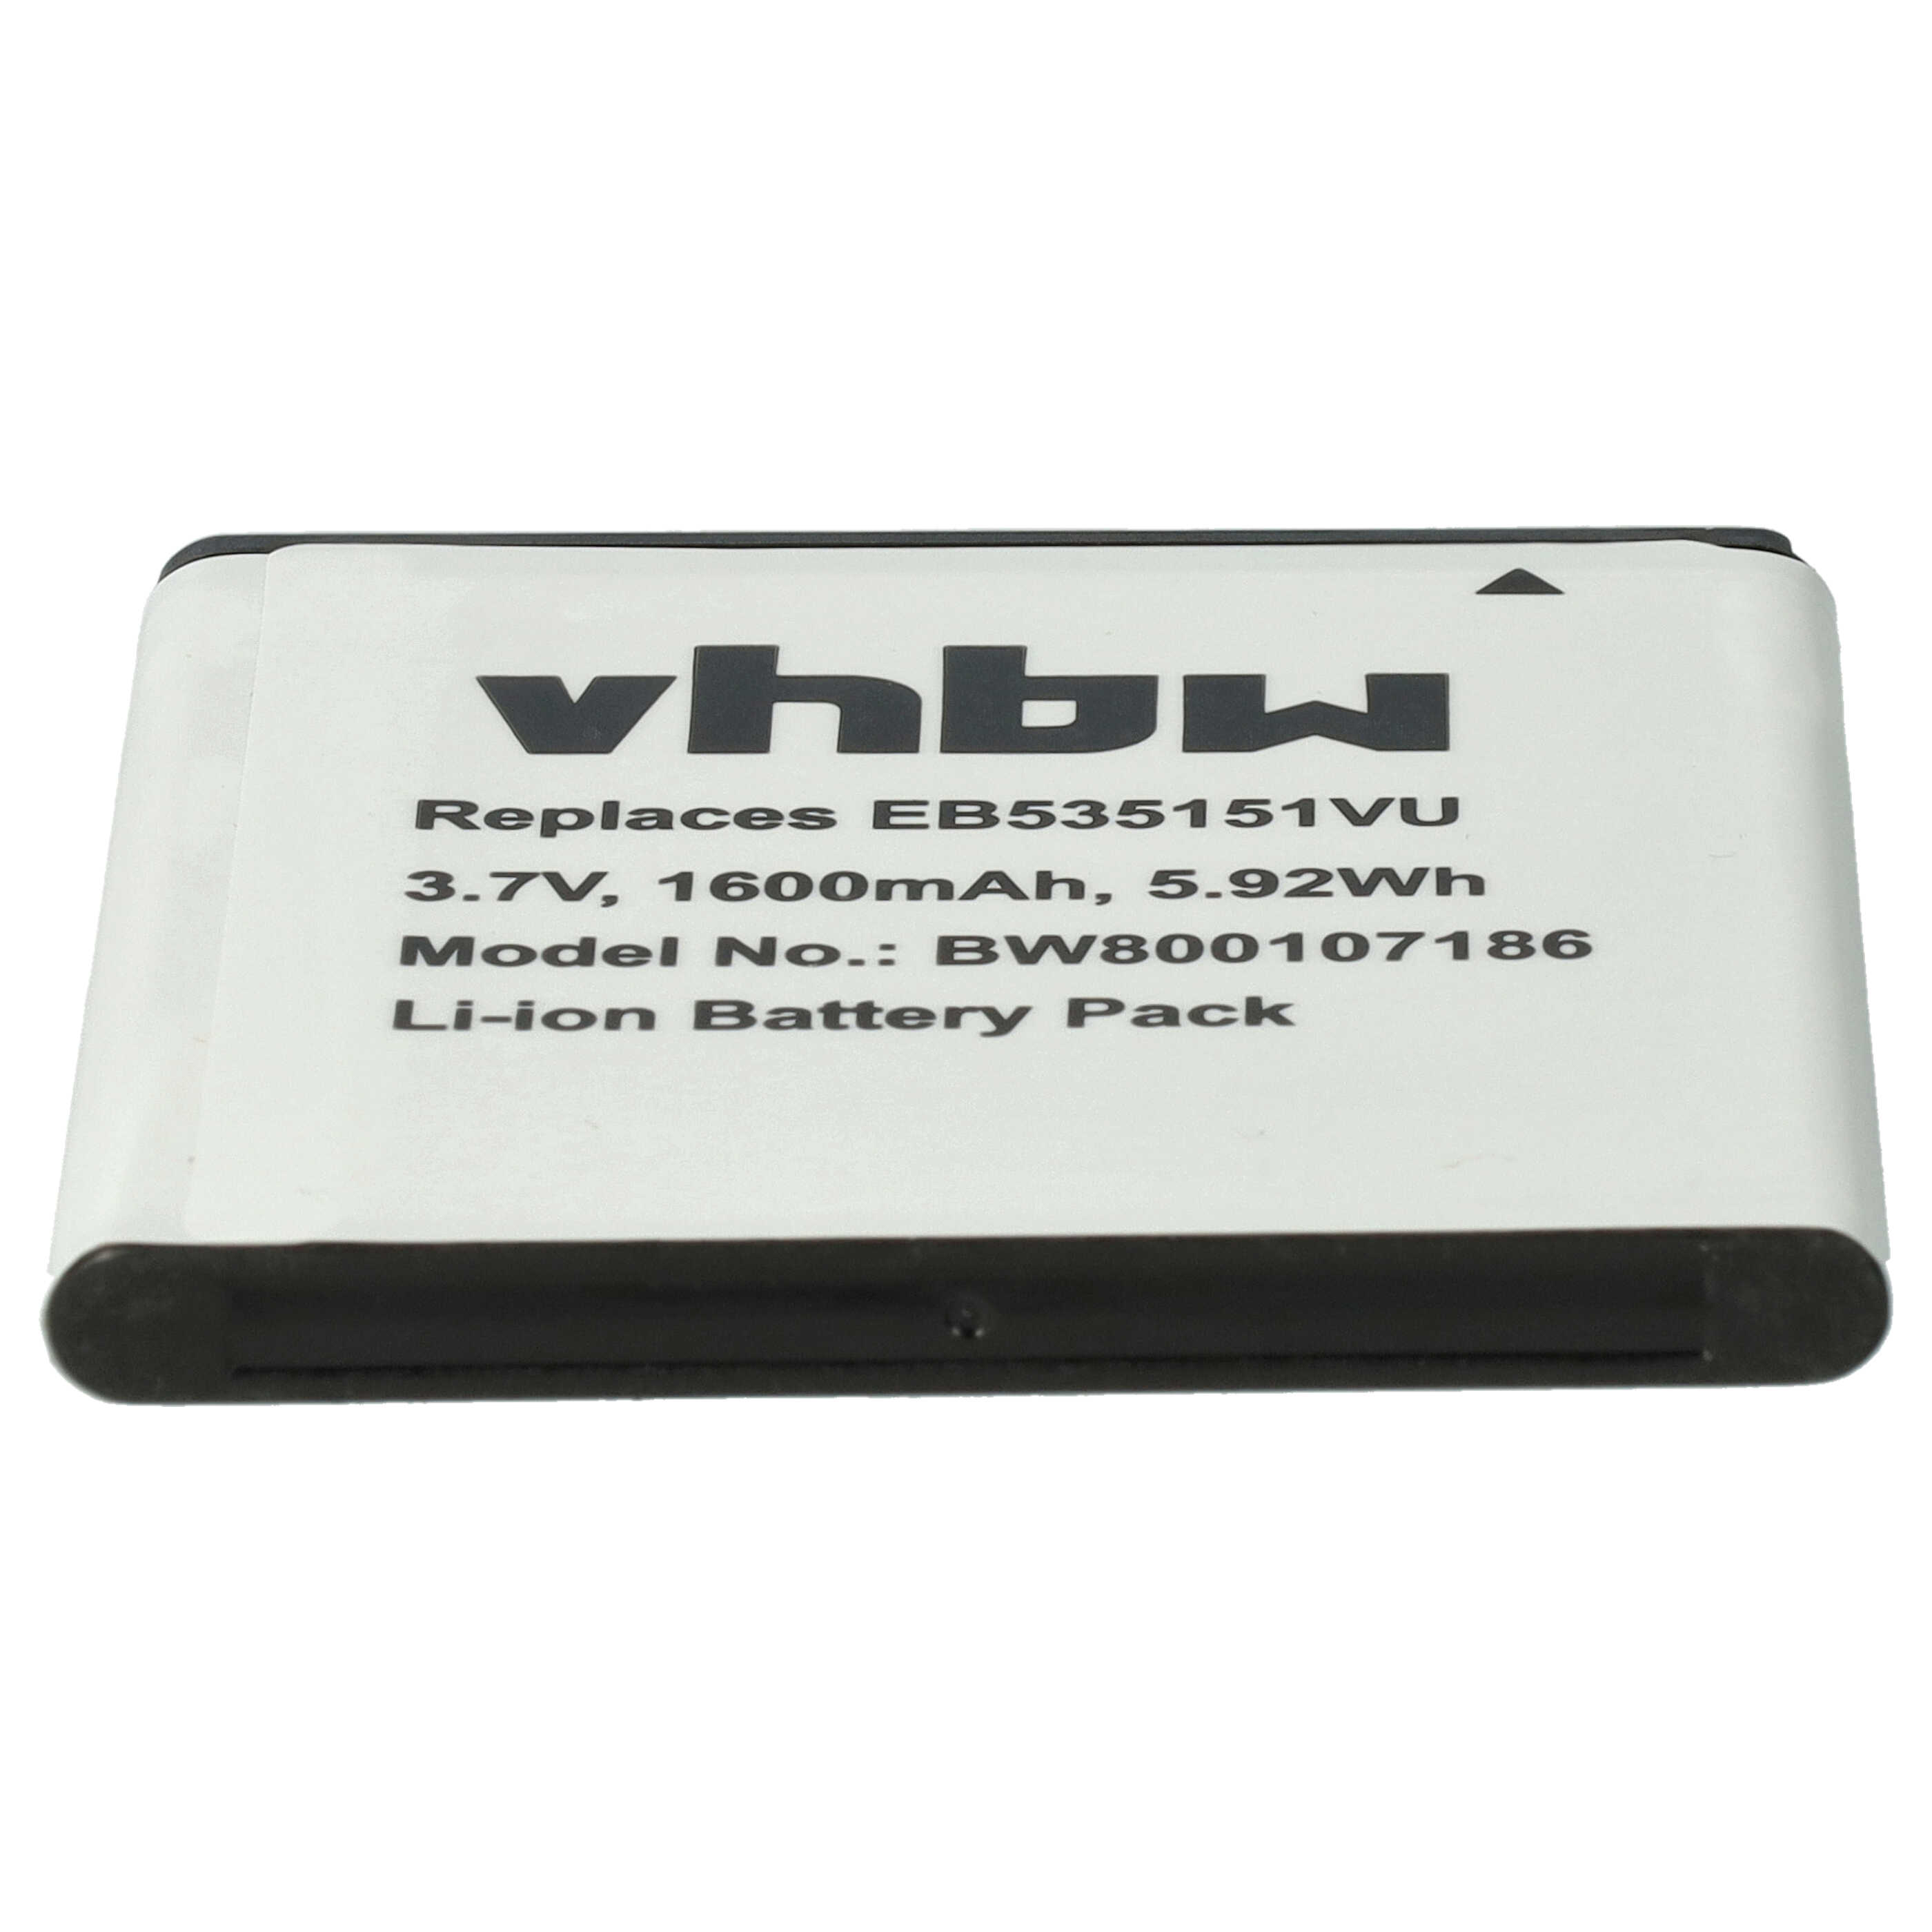 Batterie remplace Samsung EB535151VU, EB535151VUBSTD pour téléphone portable - 1600mAh, 3,7V, Li-ion